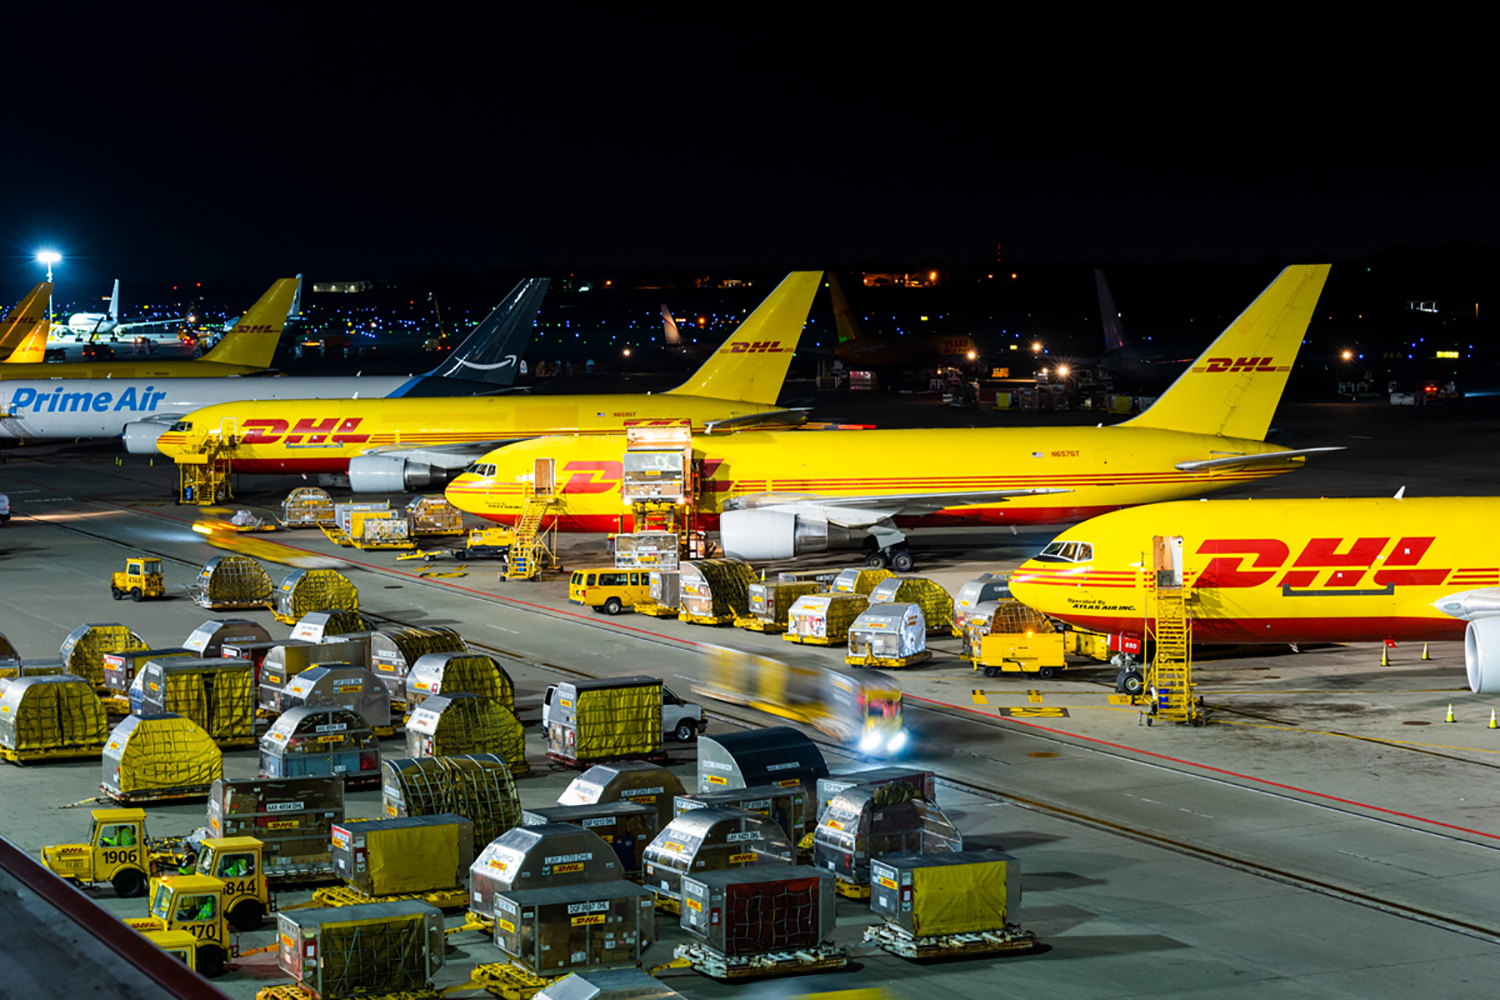 DHL operations at CVG airport.